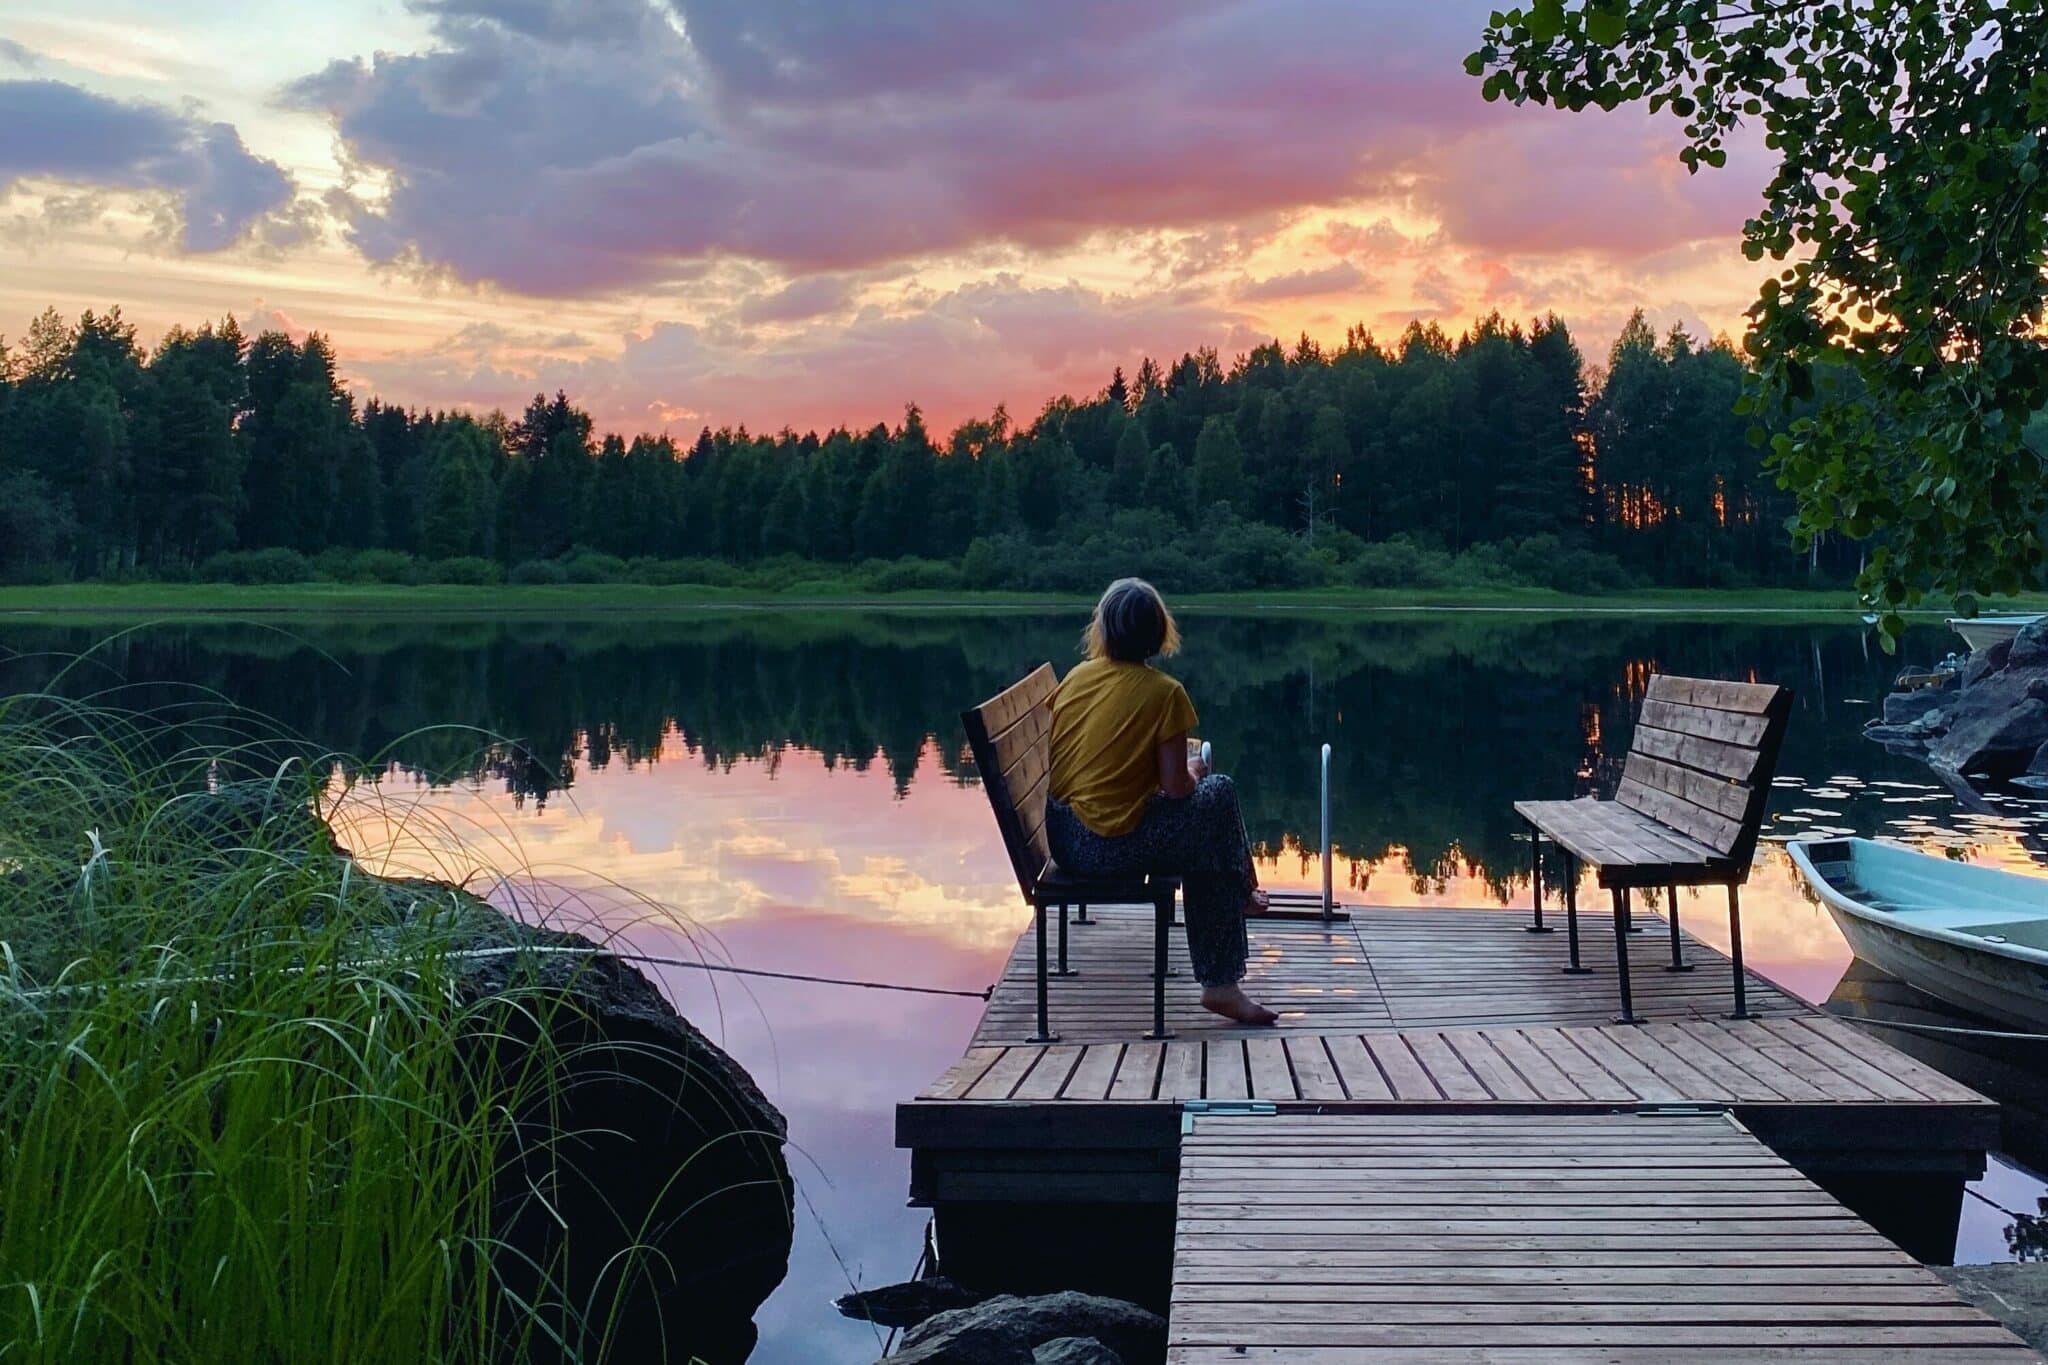 L'image montre une femme assise sur un banc sur un ponton. En arrière-plan, on voit un lac et un coucher de soleil rose.